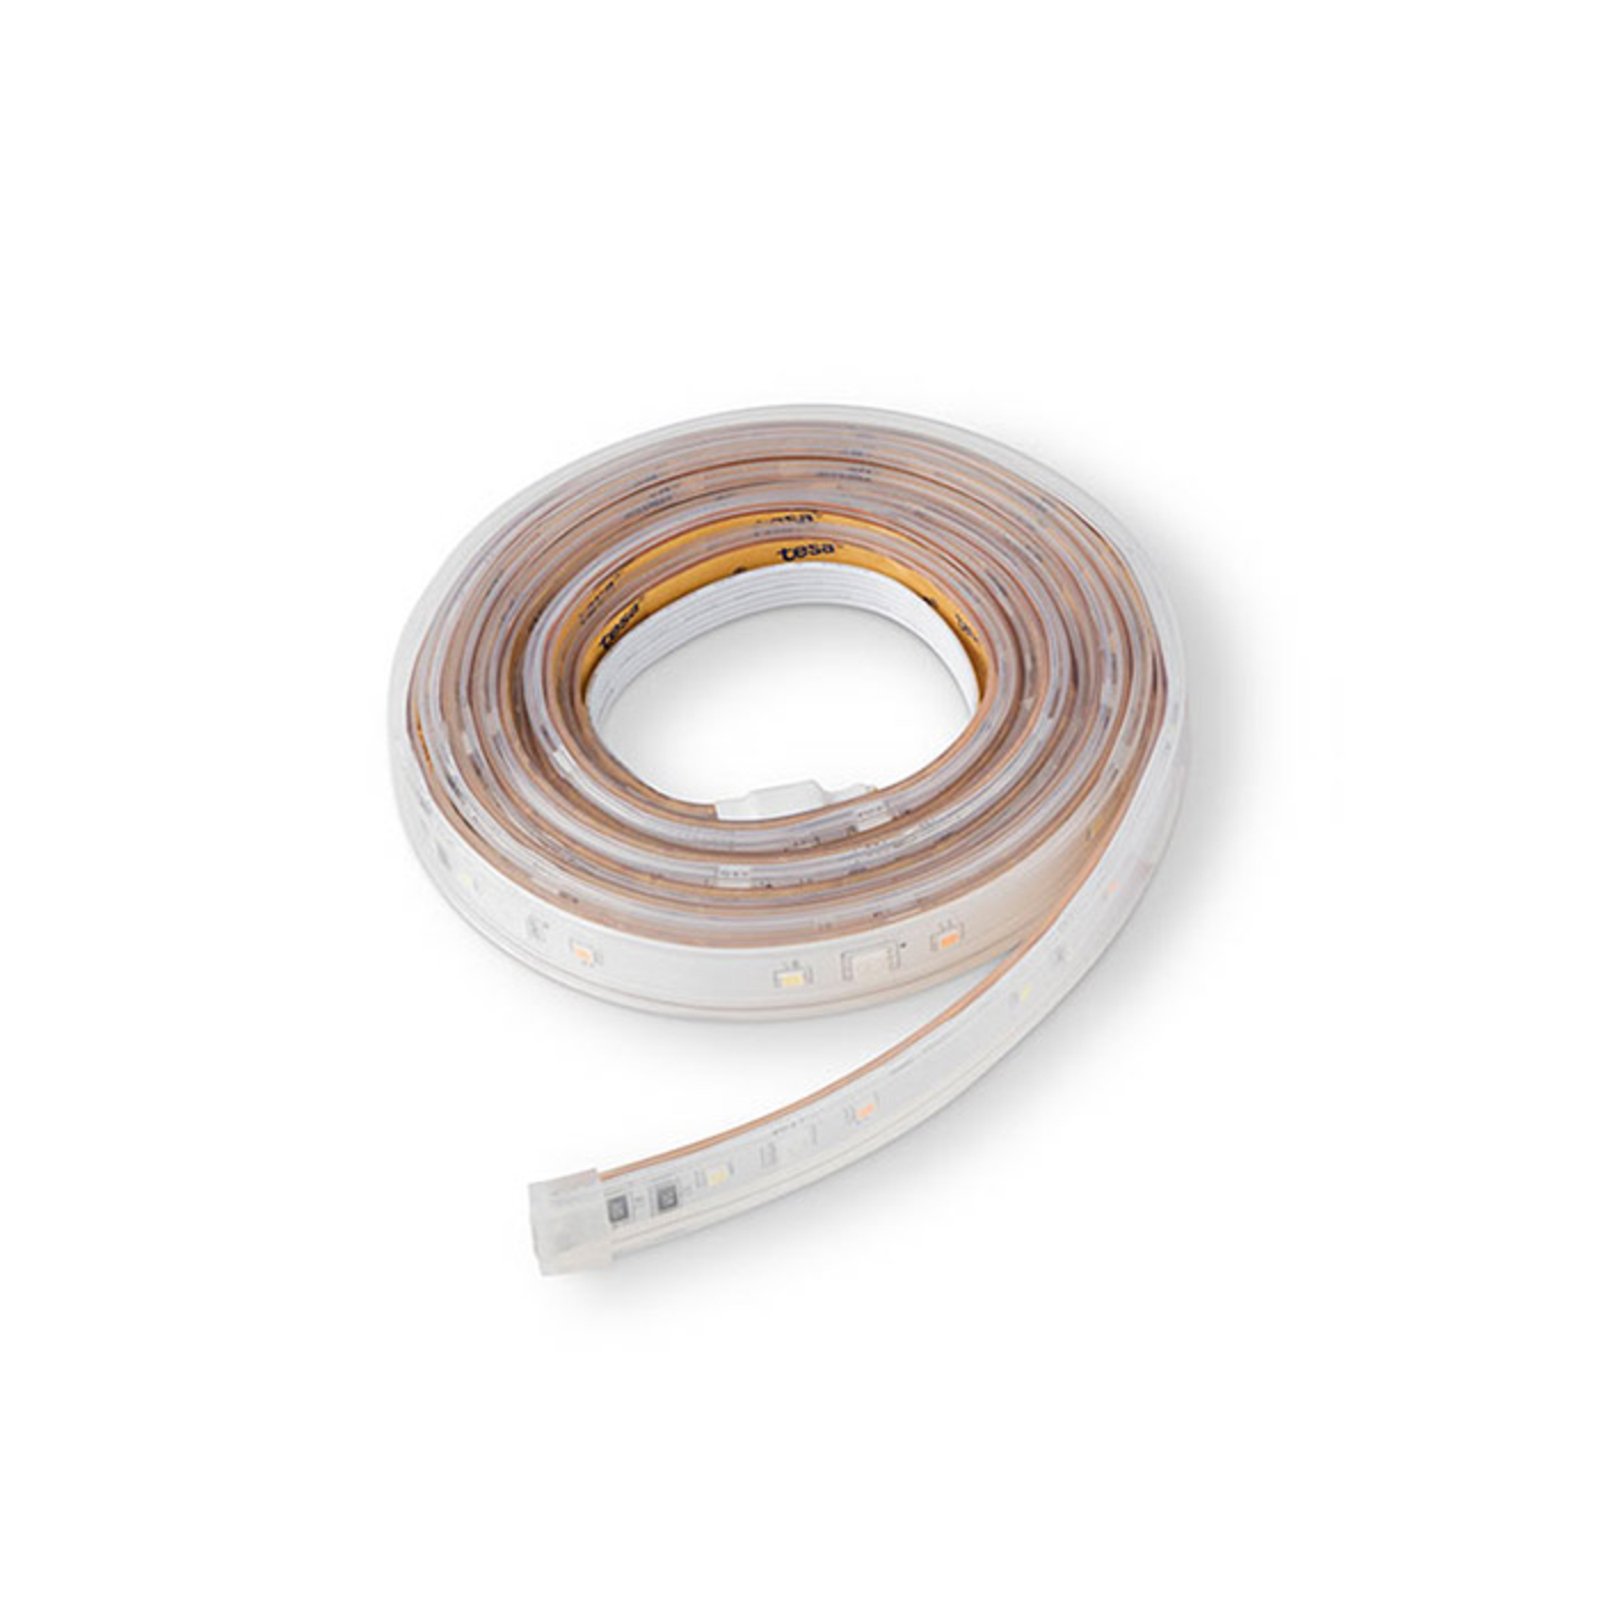 Eve Light Strip LED Apple HomeKit, 2m Basis-Set